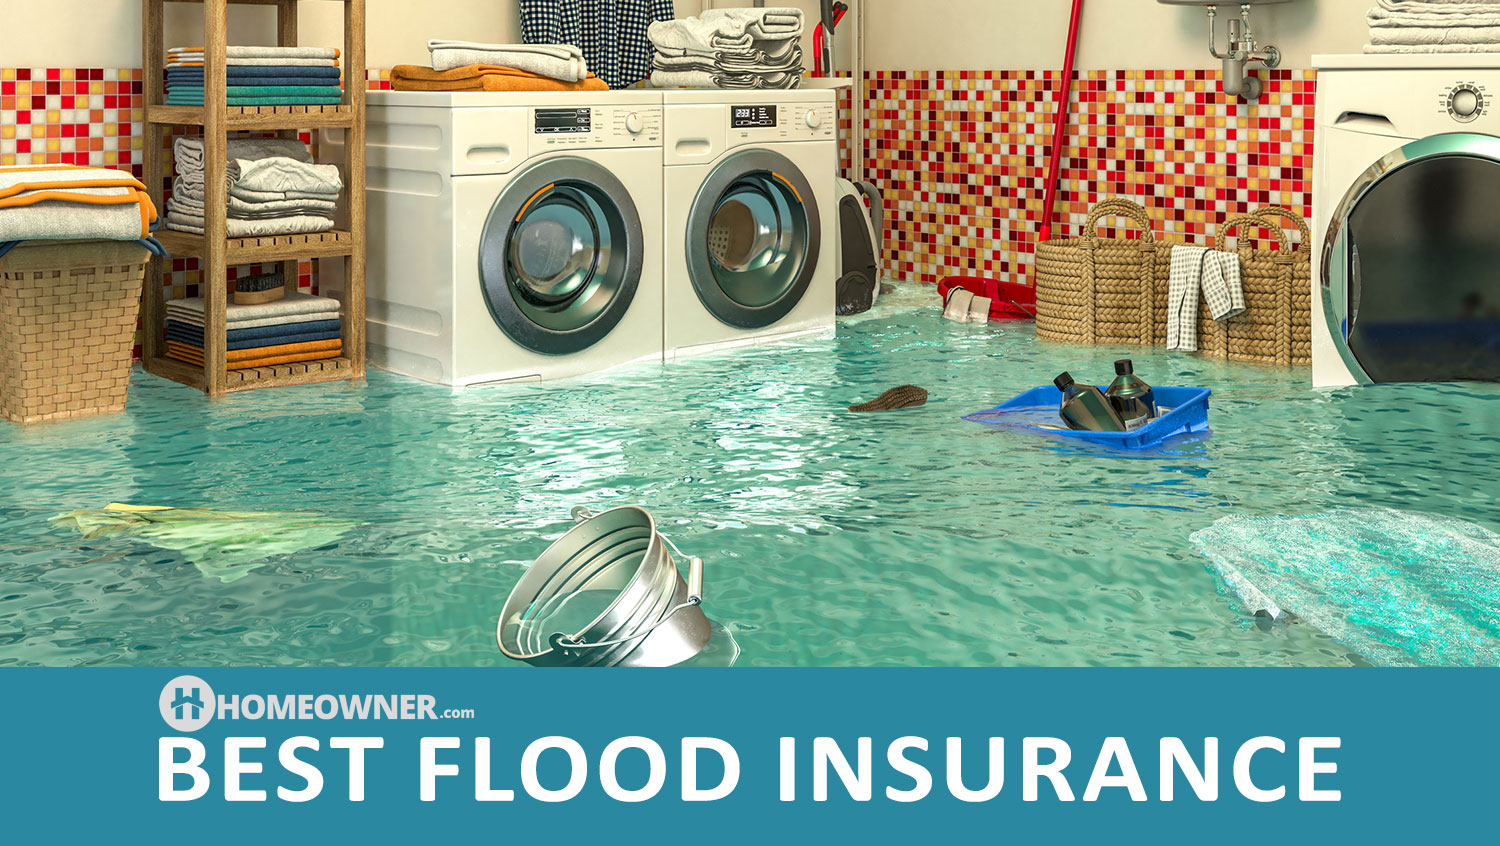 10 Best Flood Insurance Companies in 2022